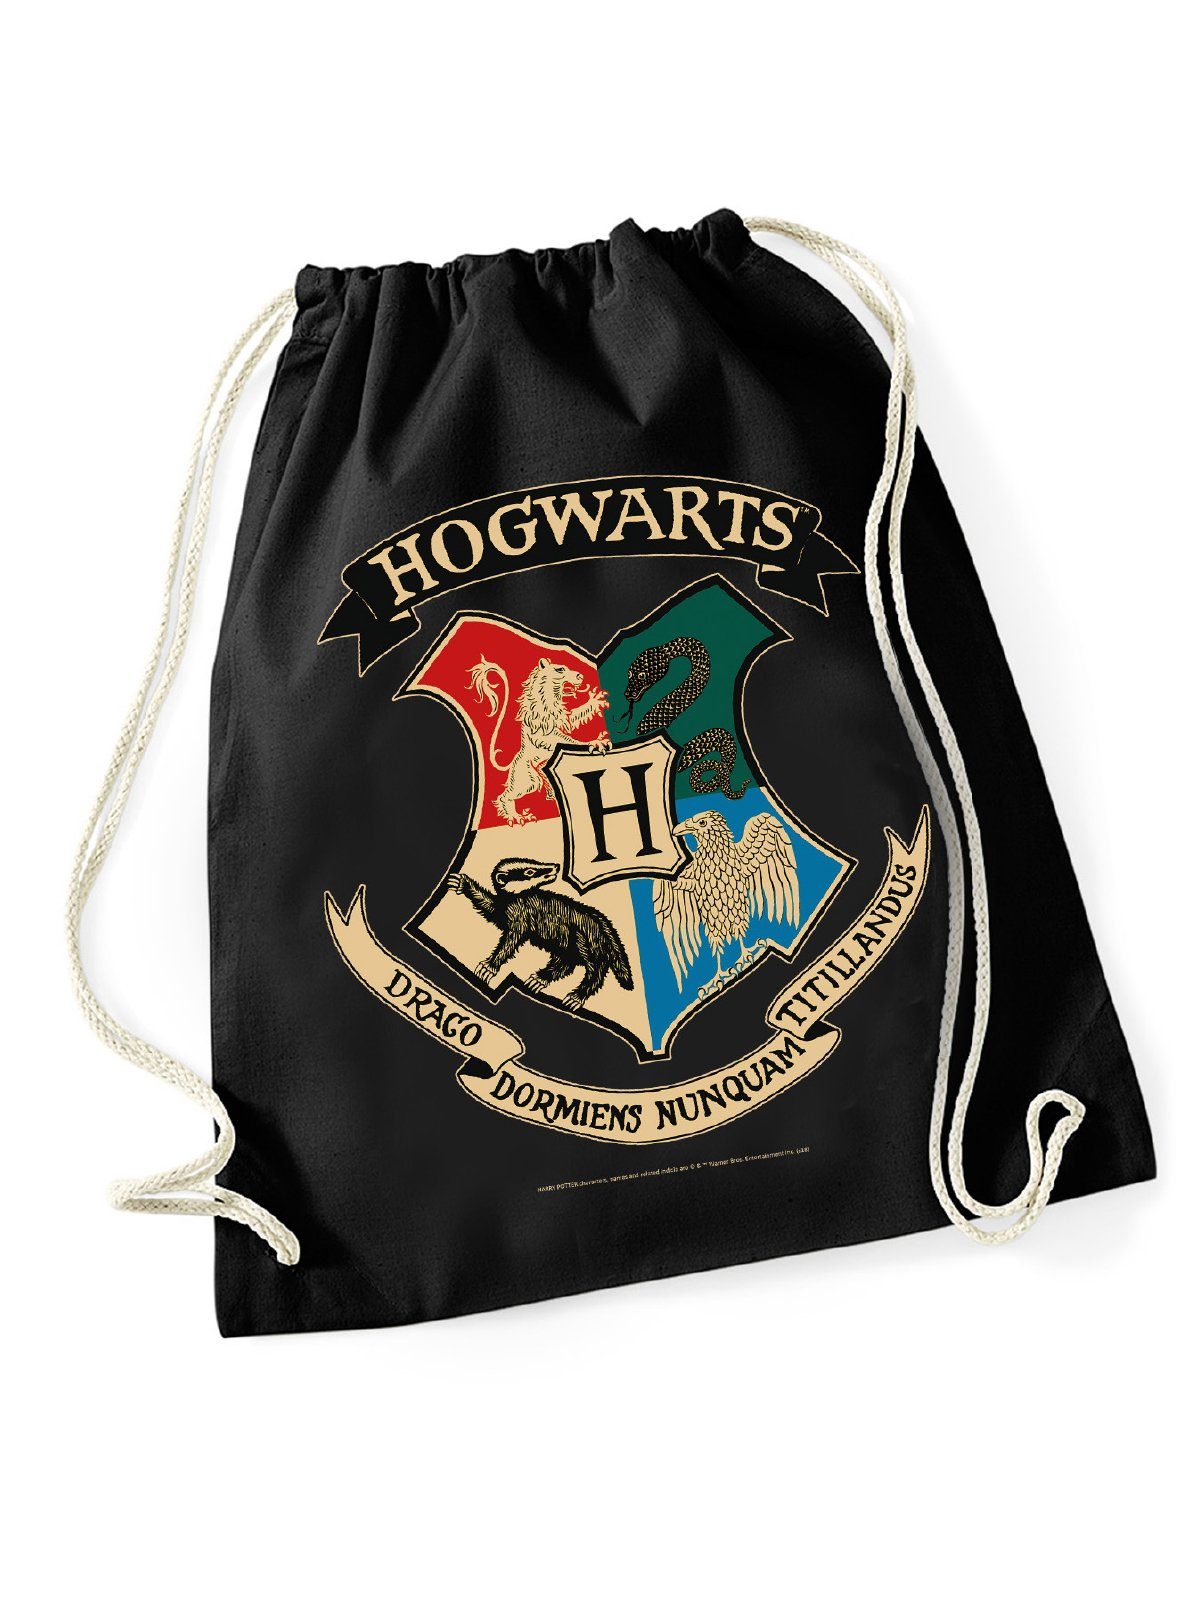 Potter Harry Hogwarts Warner Gymbag Potter Harry